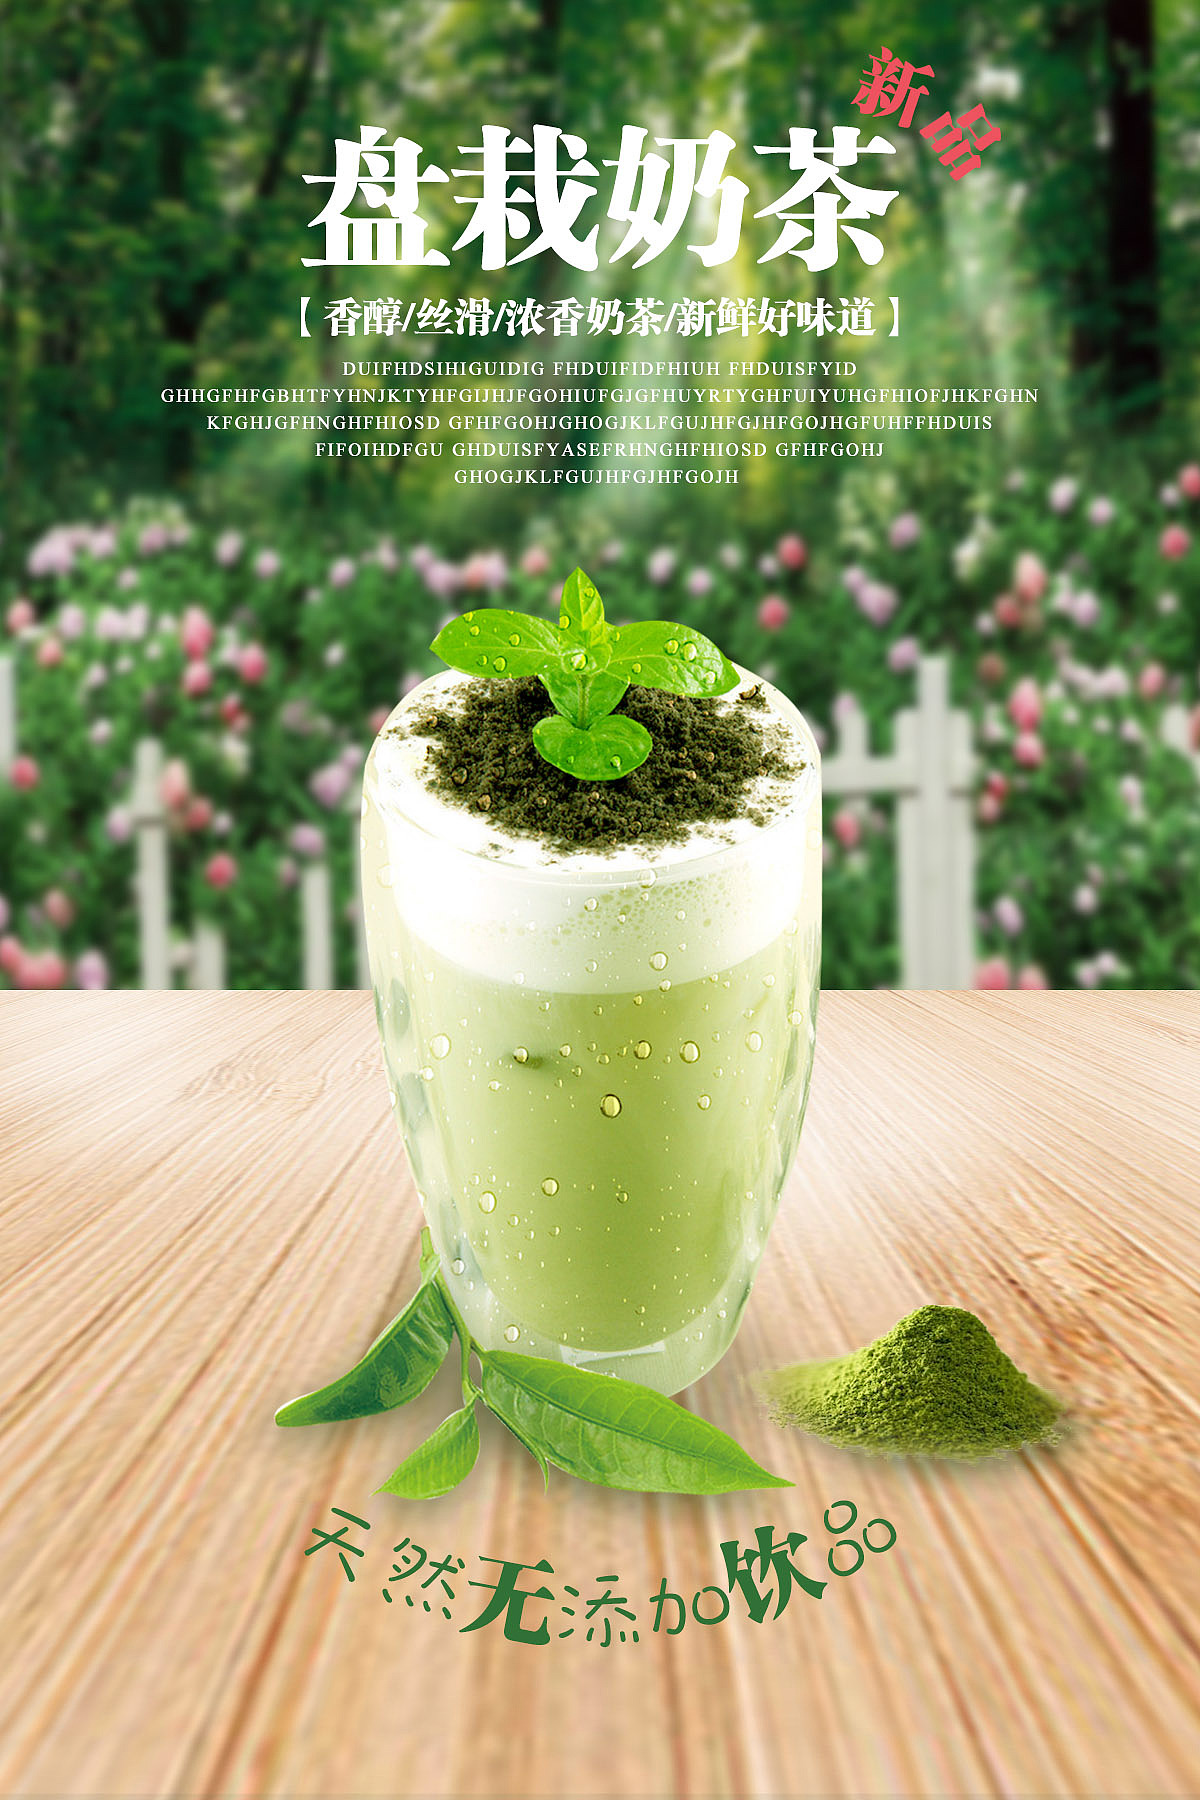 海报设计 饮品饮料海报宣传品设计作品-设计人才灵活用工-设计DNA